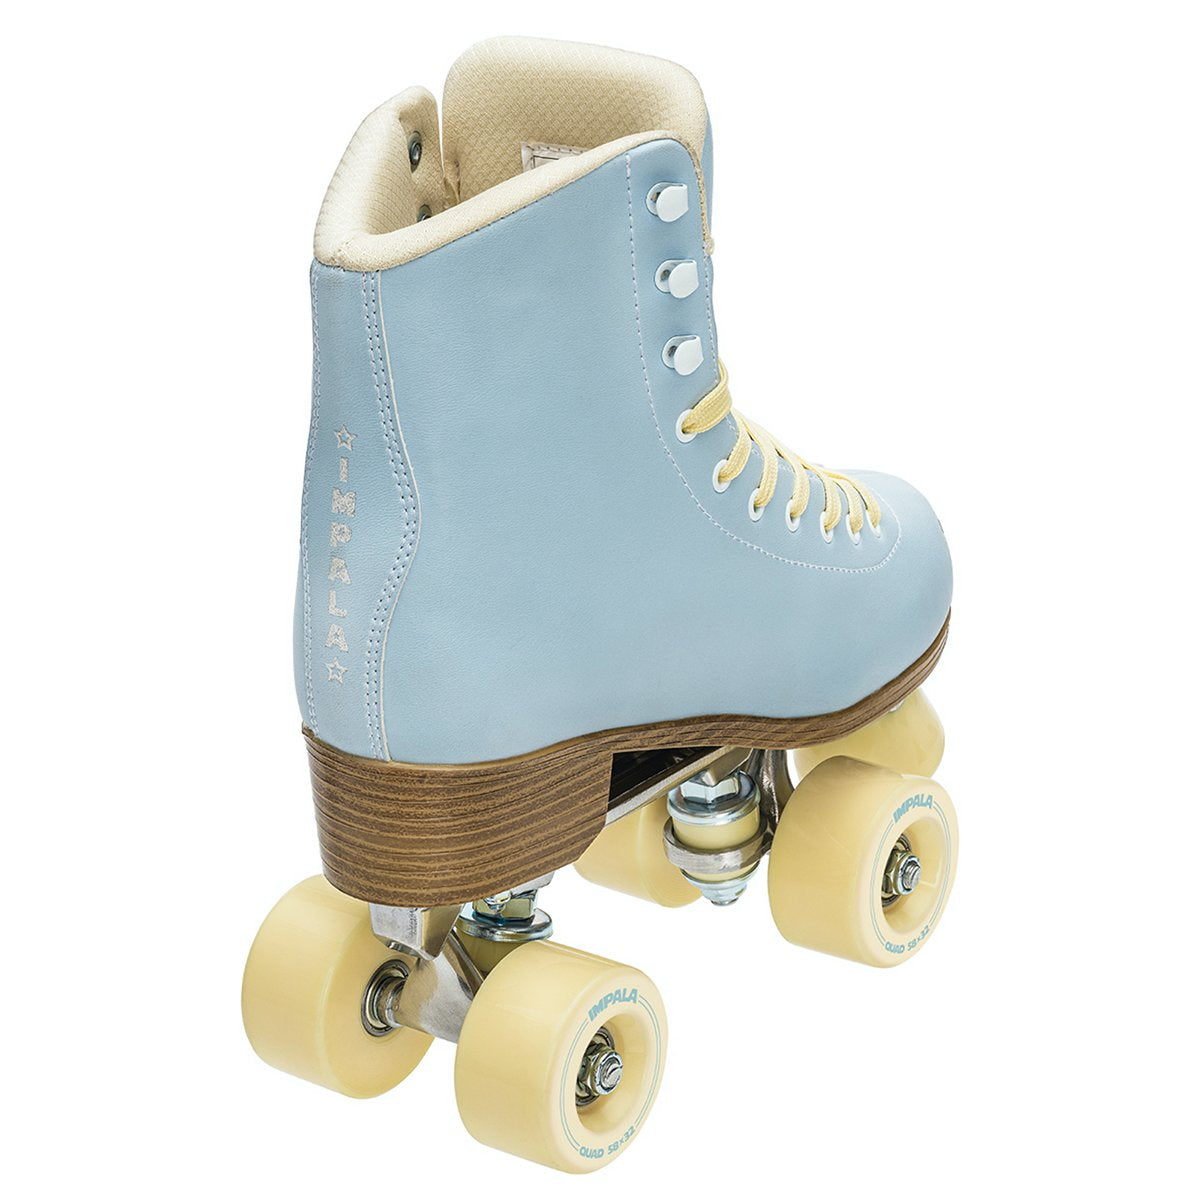 IMPALA - Sky Blue Kids Quad Roller Skates